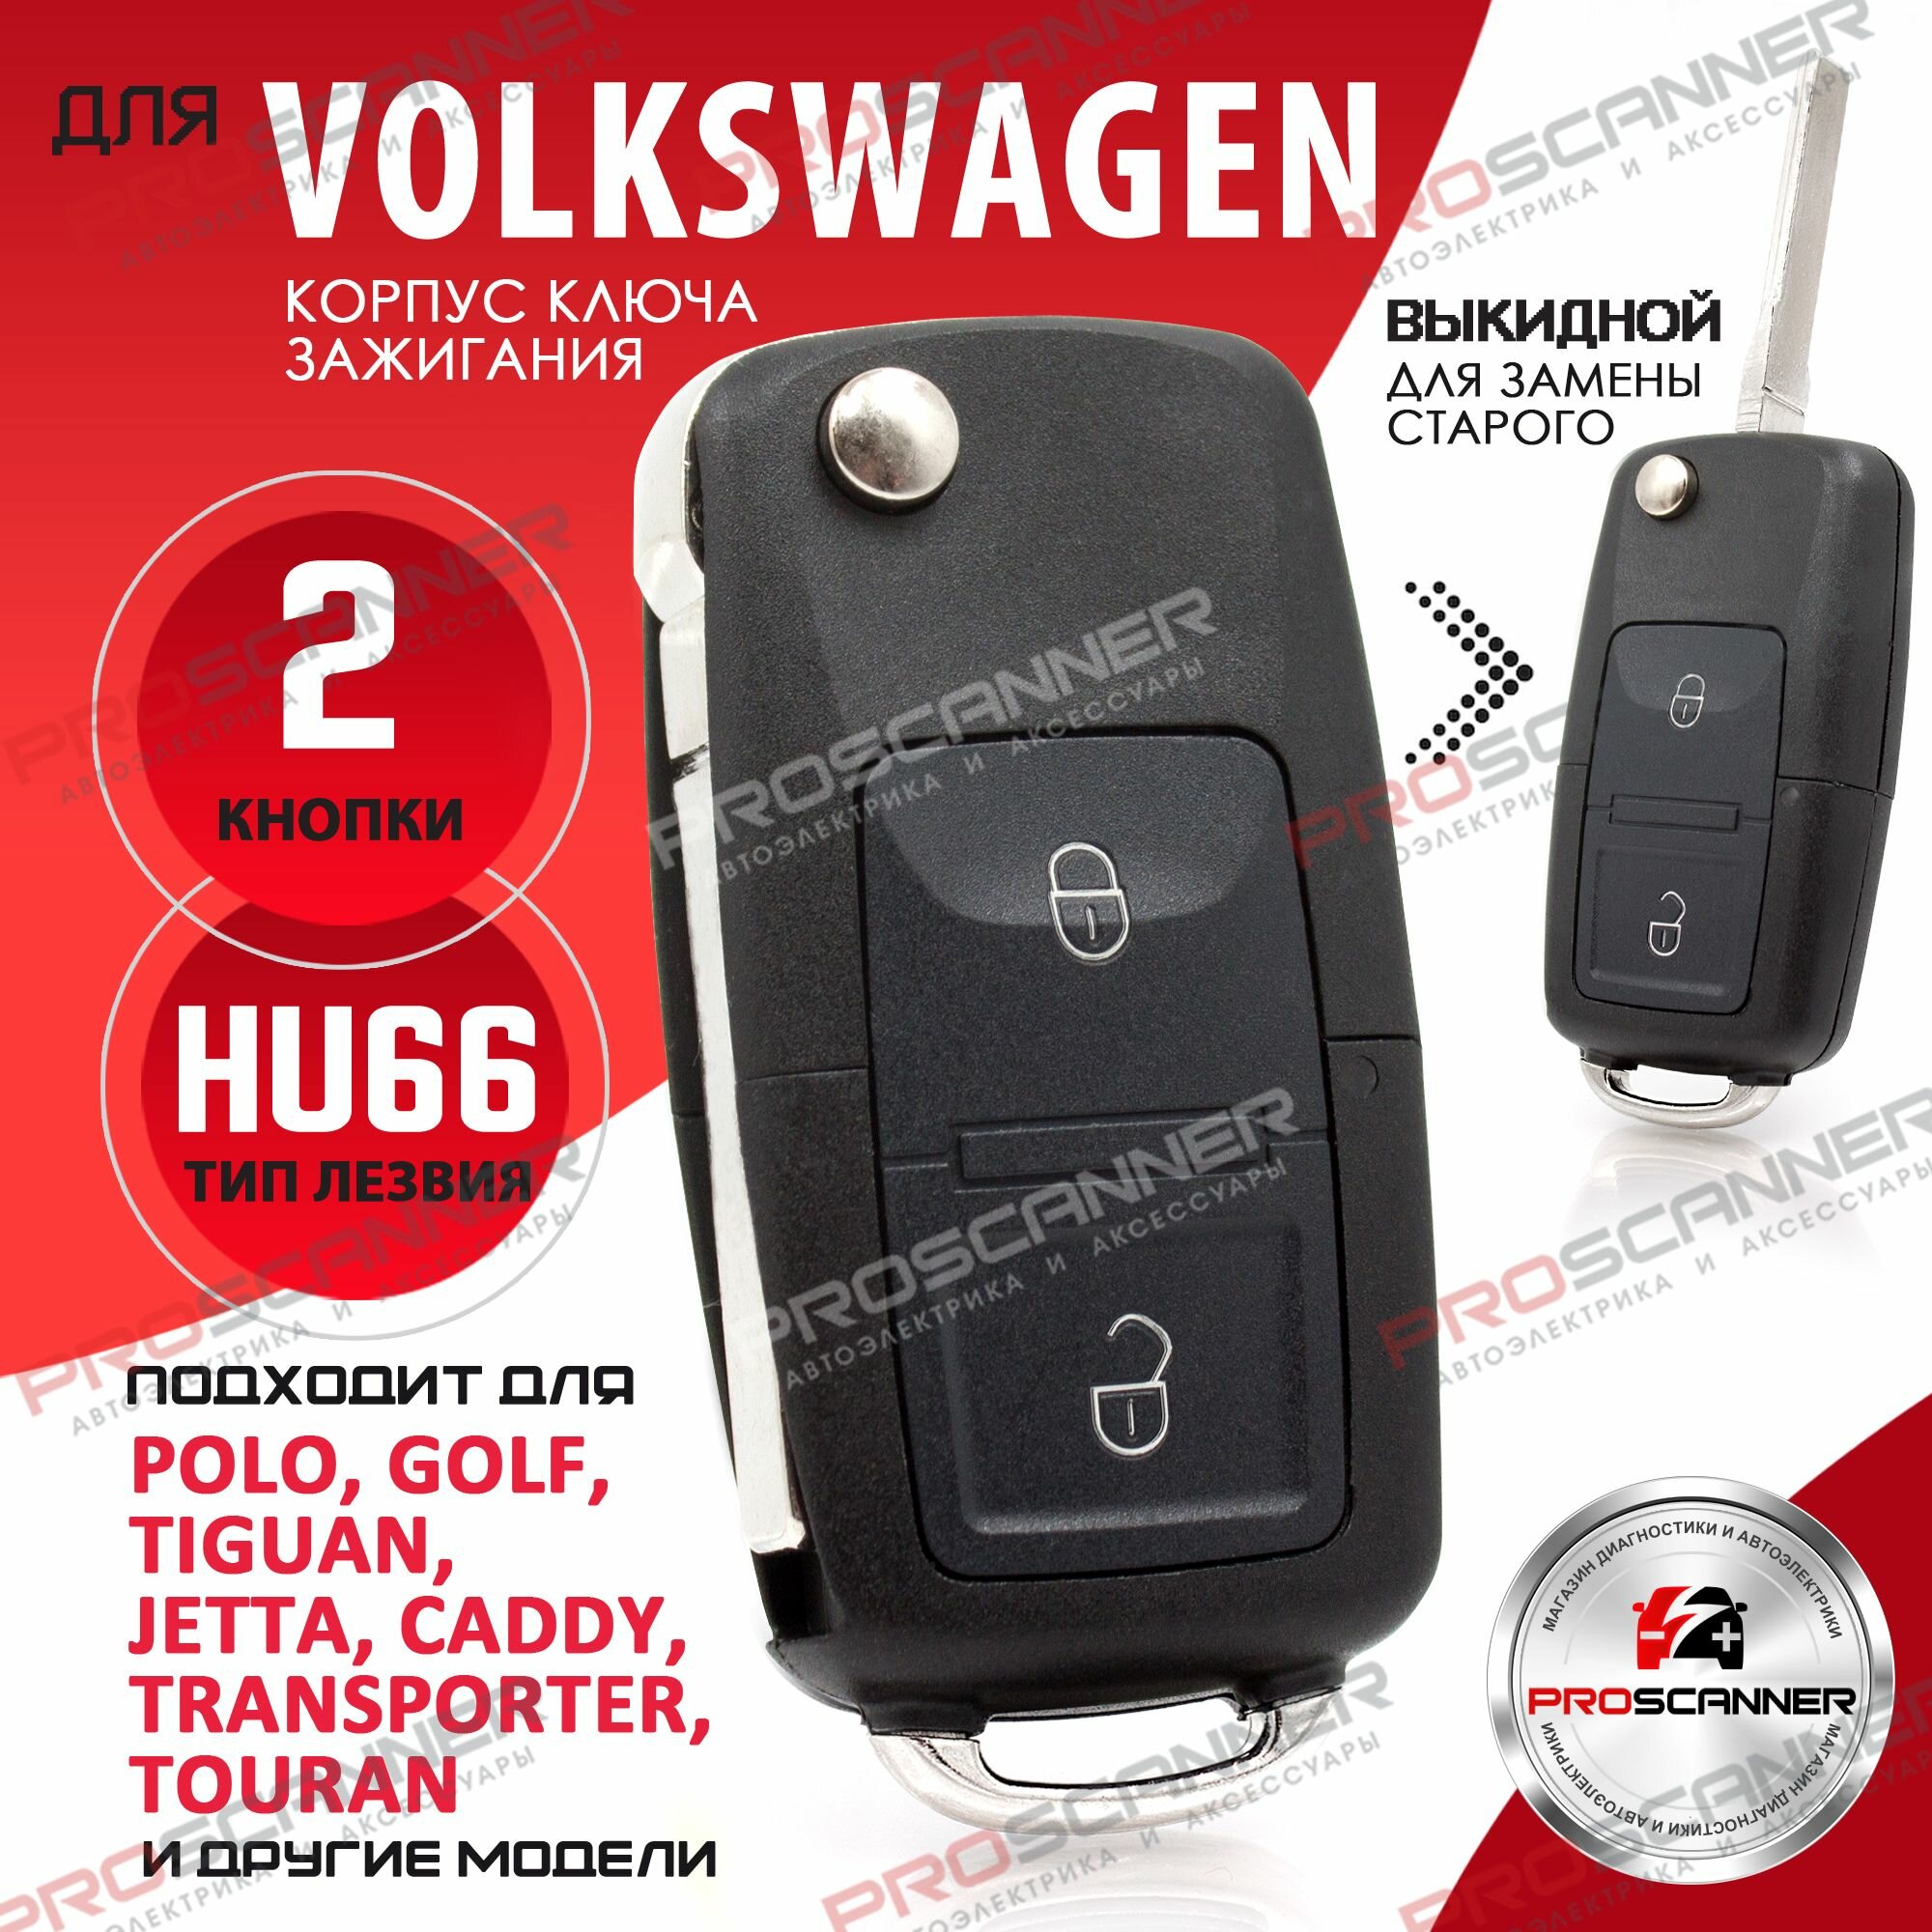 Корпус выкидного ключа зажигания для Volkswagen Golf Bora Polo Passat Гольф Бора Пора Пассат - 1 штука (2х кнопочный лезвие HU66)